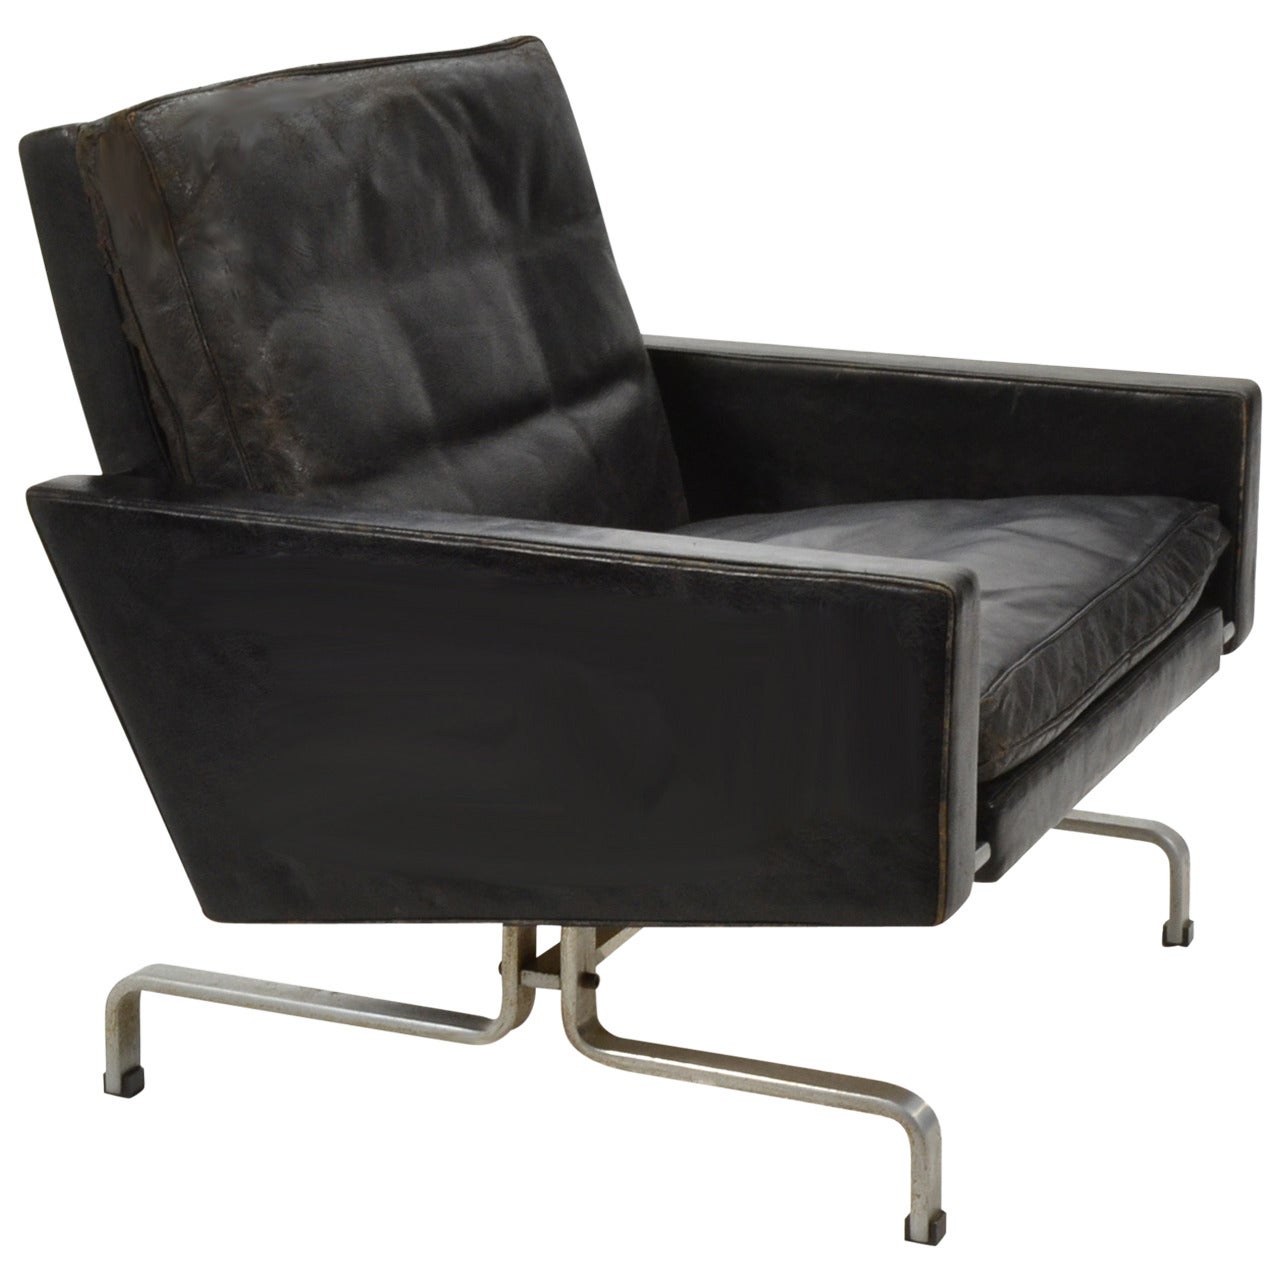 Poul Kjaerholm PK-31/1 Lounge Chair by E. Kold Christensen